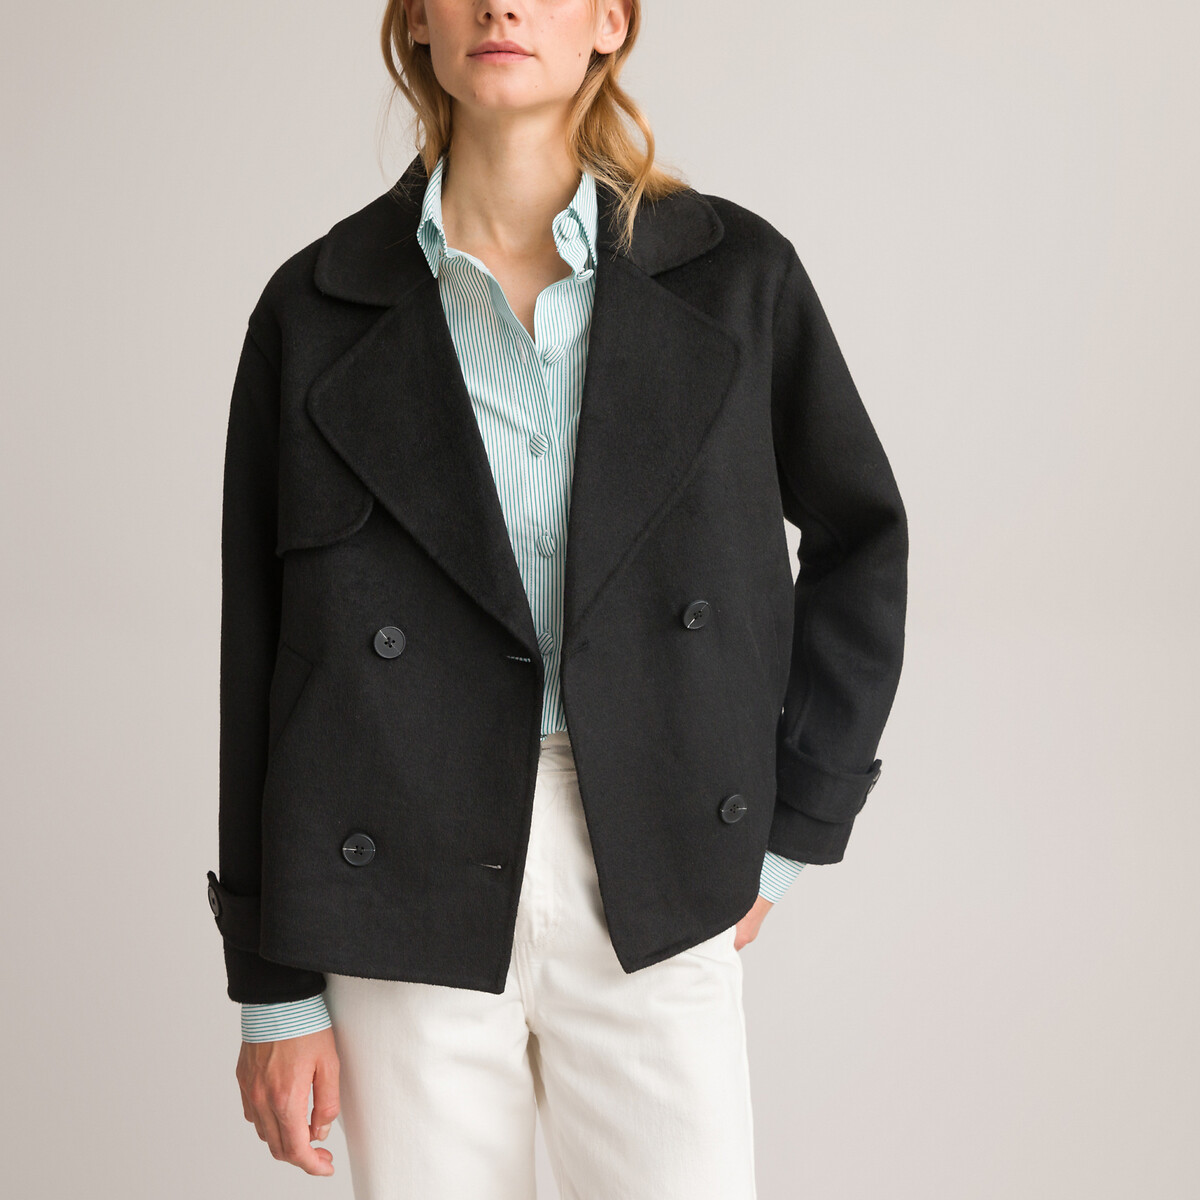 Мужские куртки Polo Ralph Lauren - купить в Москве в интернет-магазинах на Shopsy